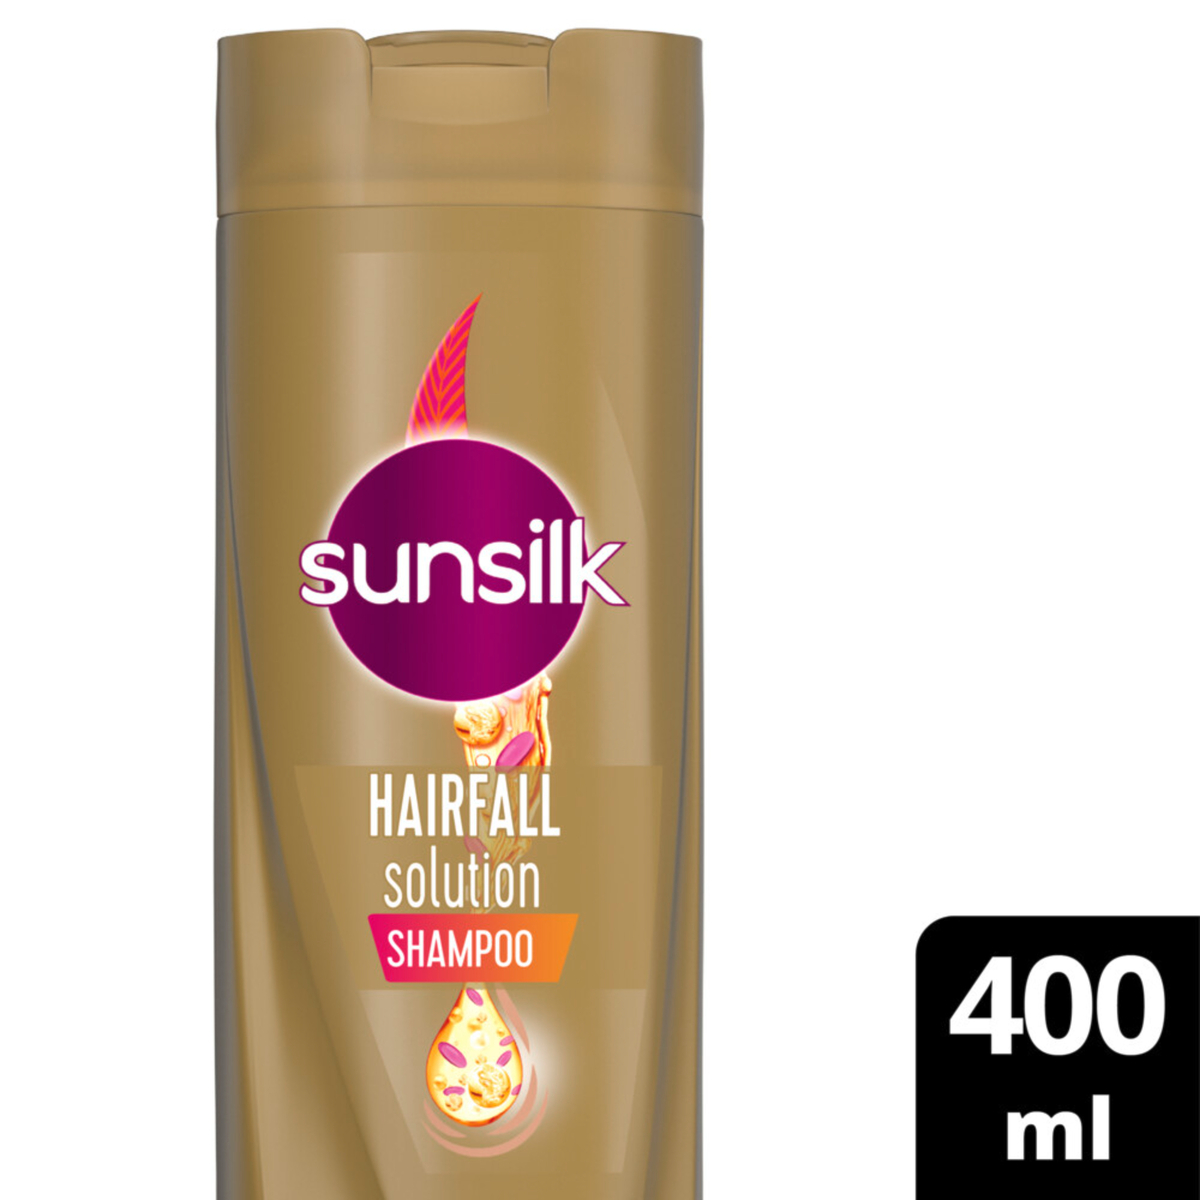 اشتري قم بشراء صانسيلك شامبو لتساقط الشعر ، 400 مل Online at Best Price من الموقع - من لولو هايبر ماركت Shampoo في السعودية